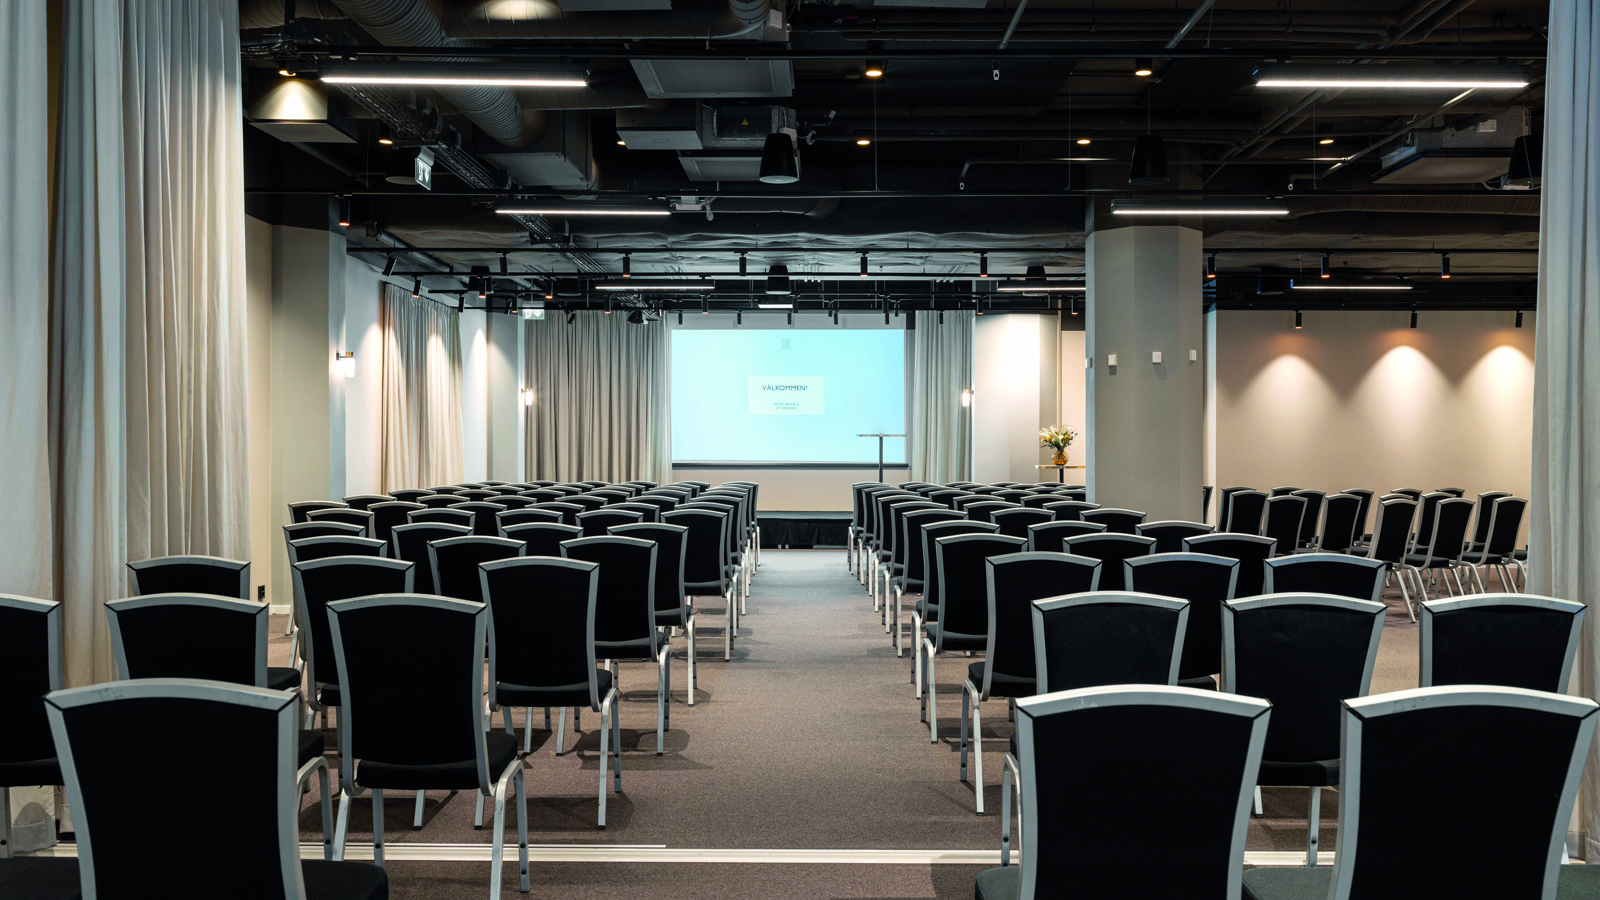 Konferensrum med bio-sittning, mörka stolar och vita väggar